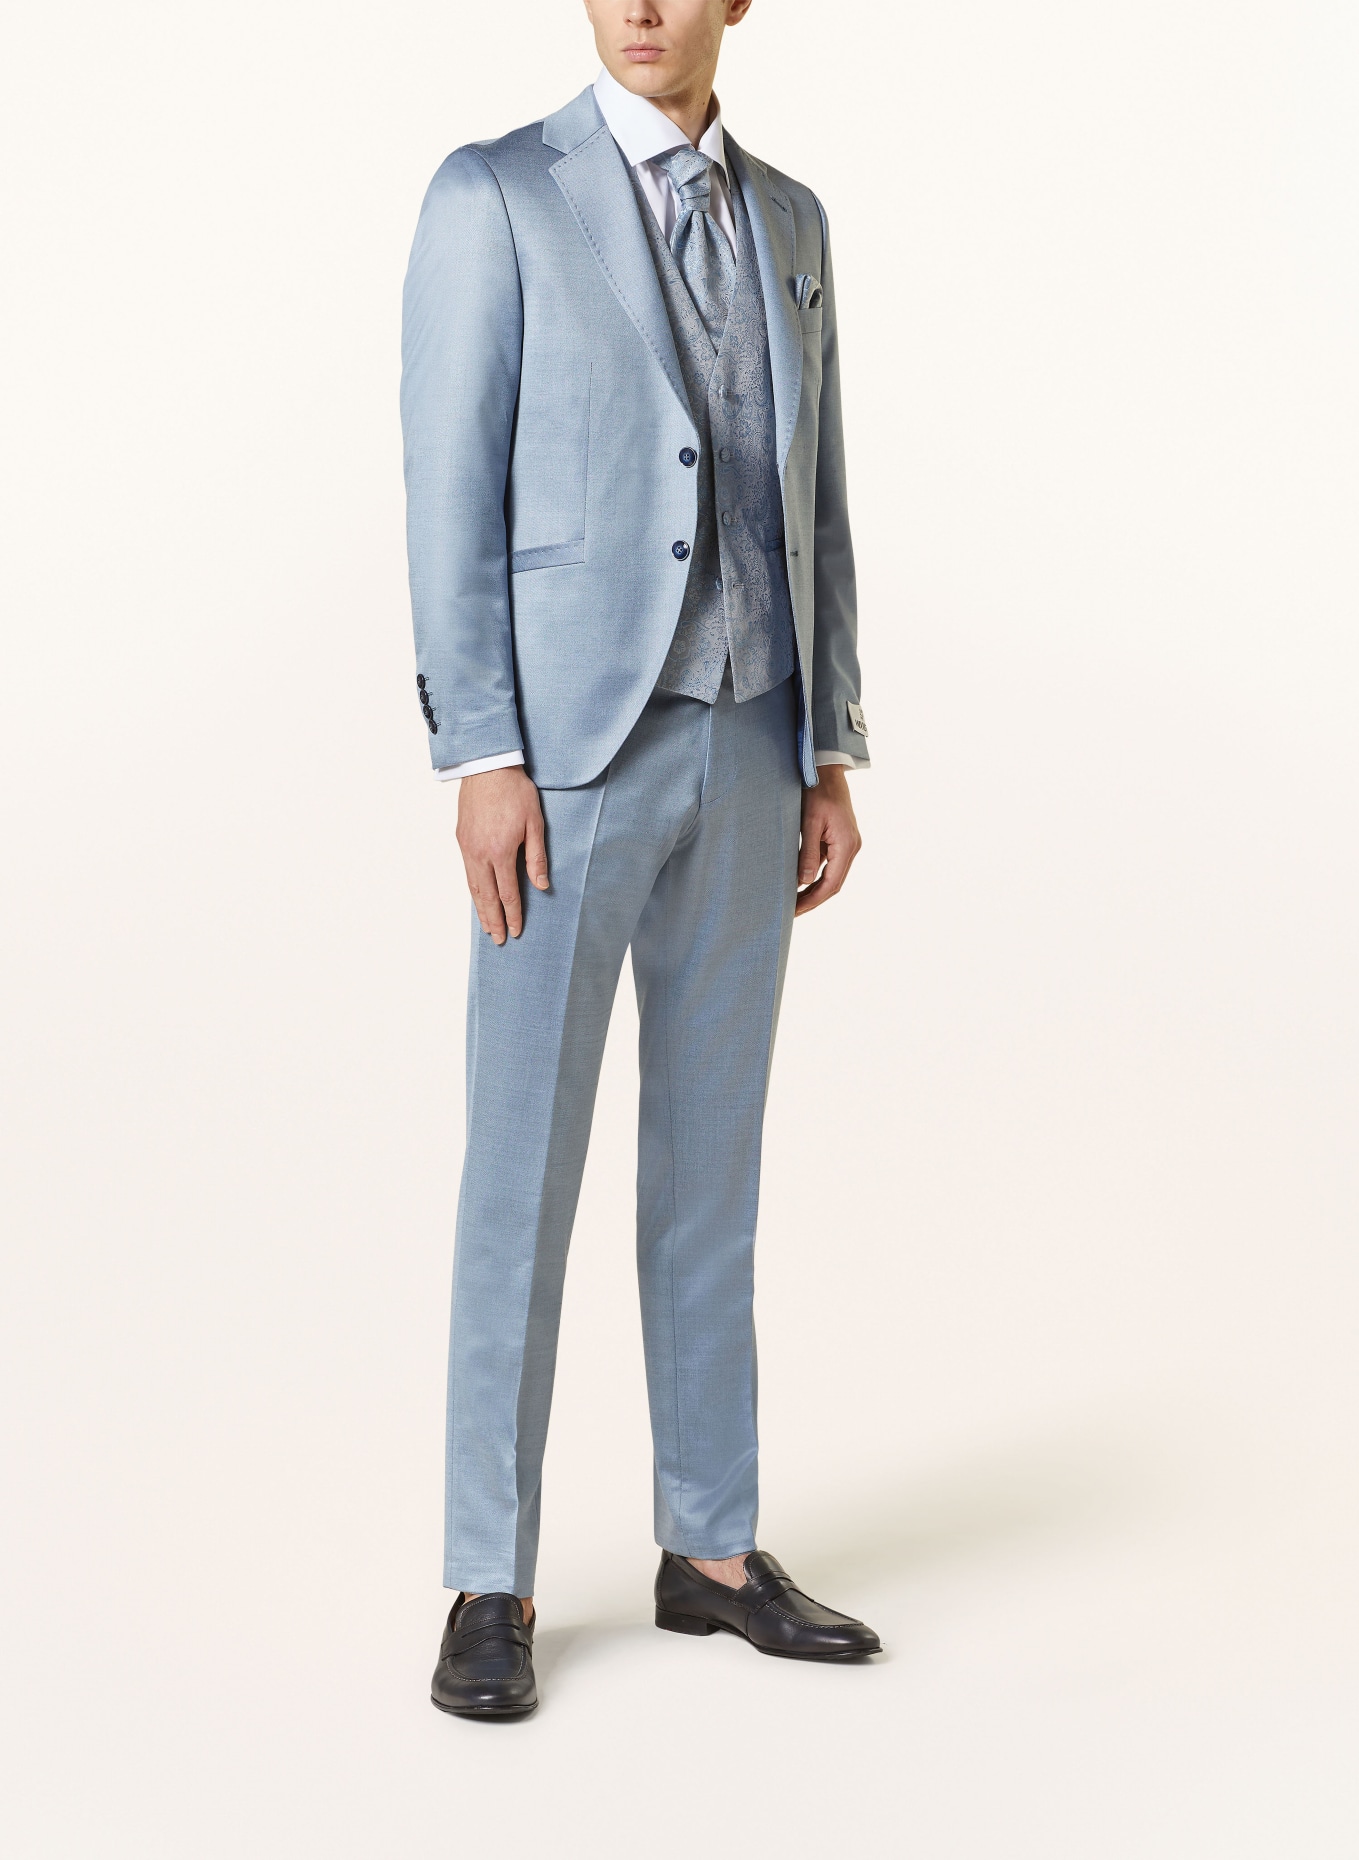 WILVORST Suit trousers slim fit, Color: 036 hell Blau (Image 2)